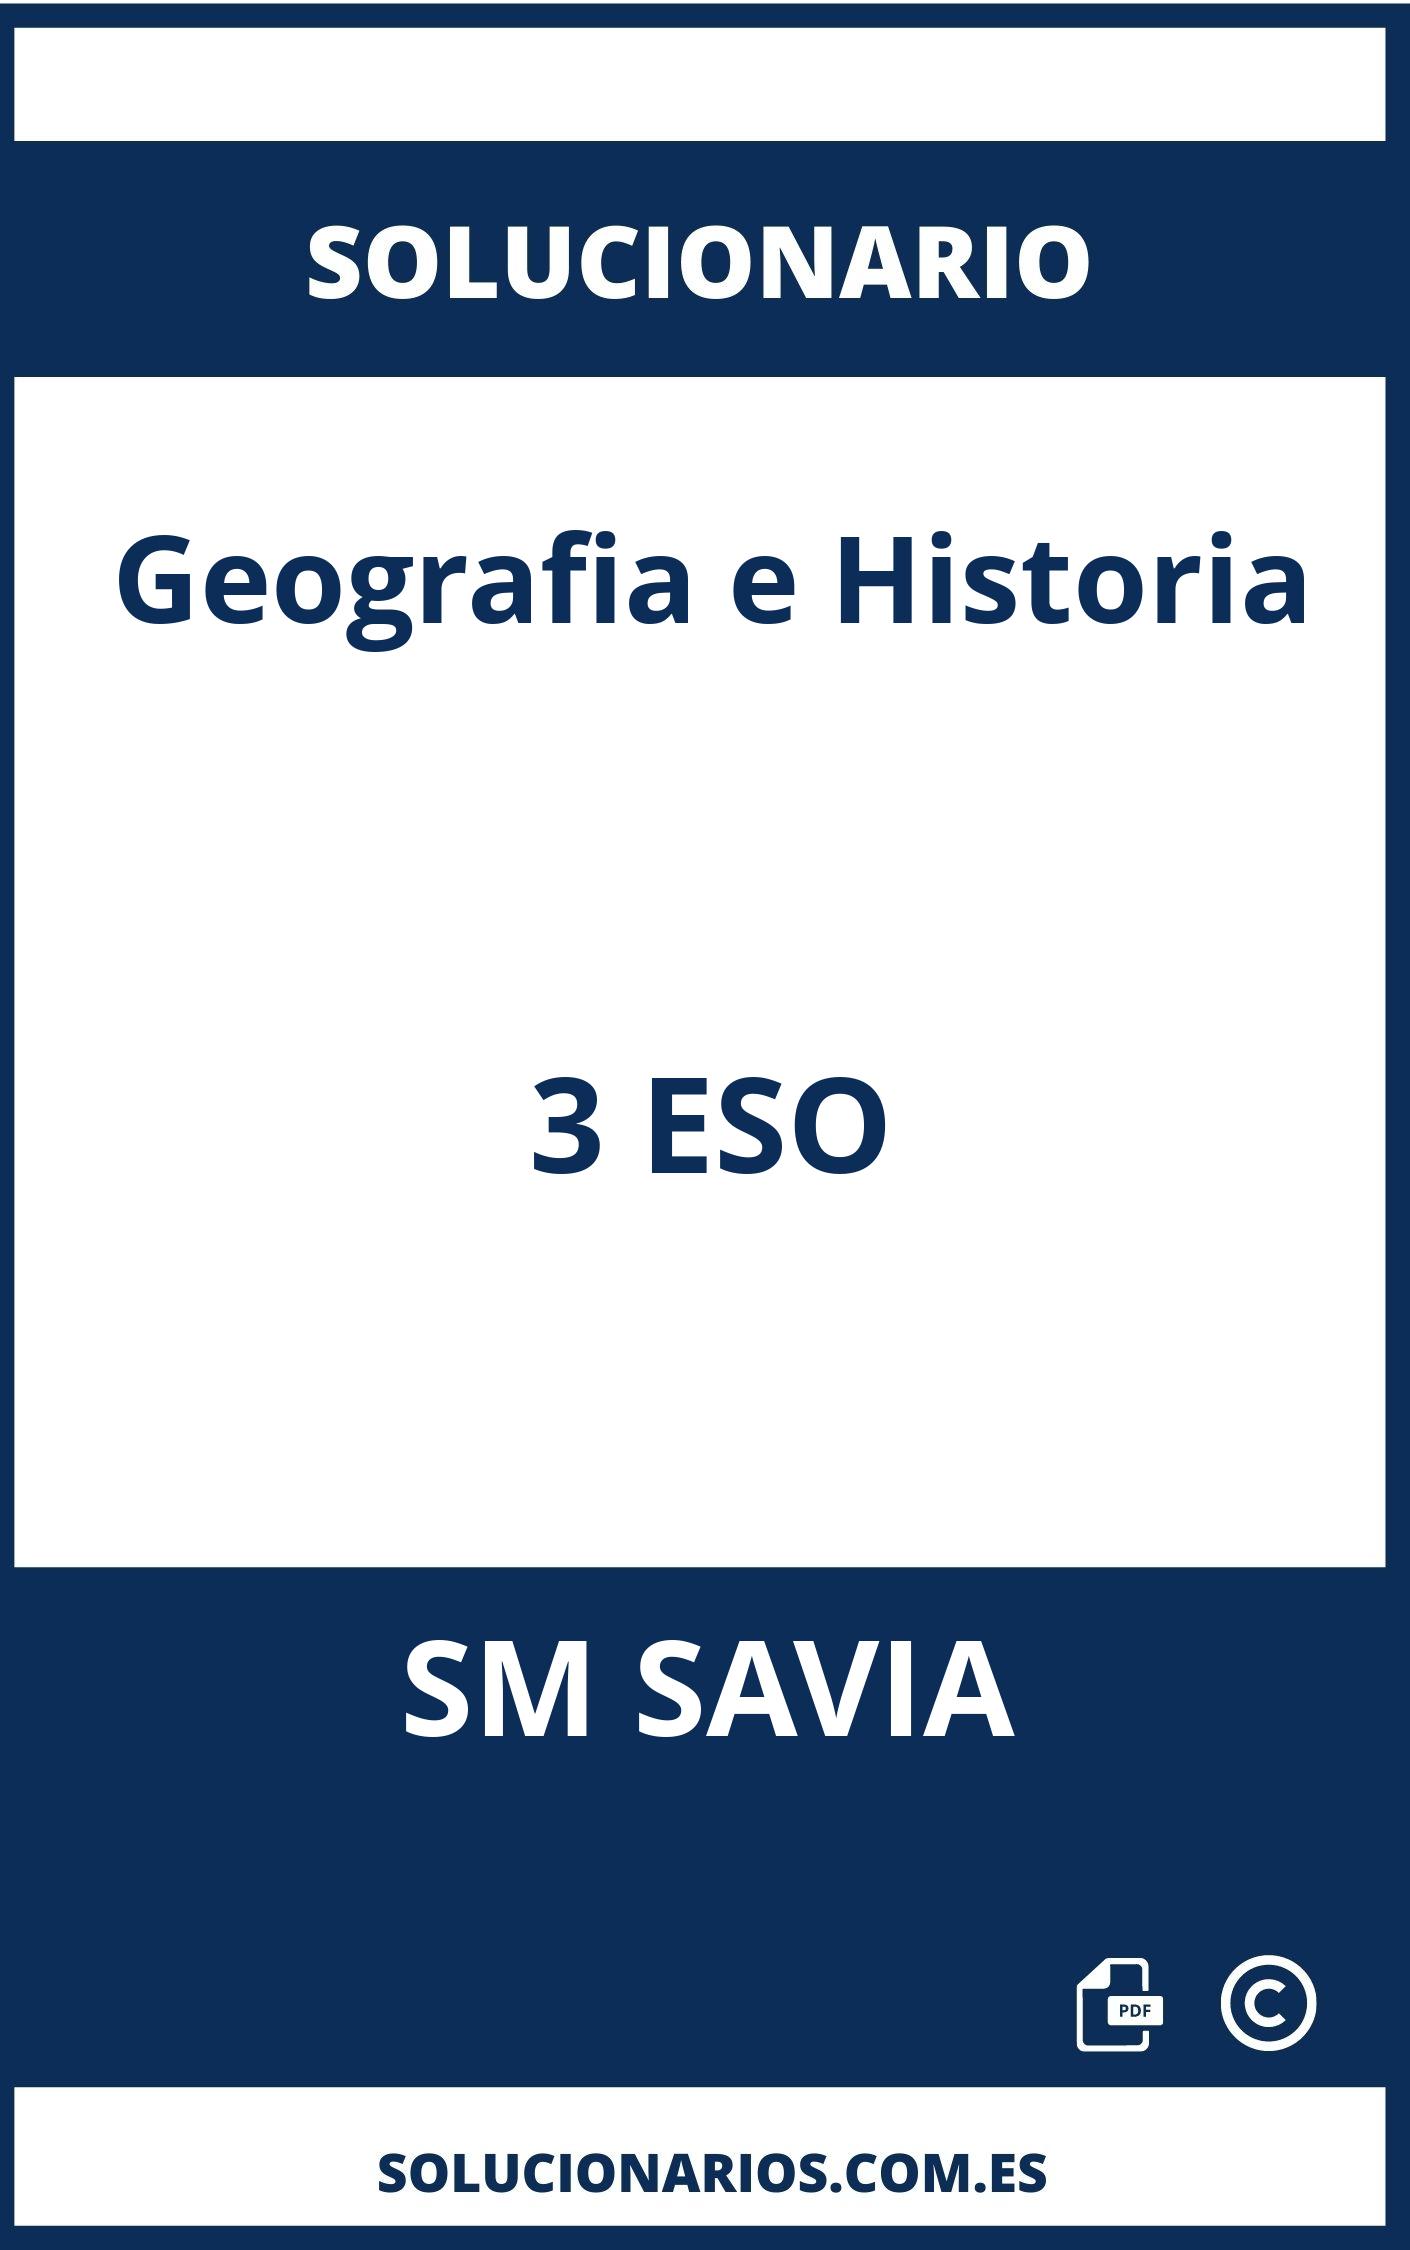 Solucionario Geografia e Historia 3 ESO SM SAVIA